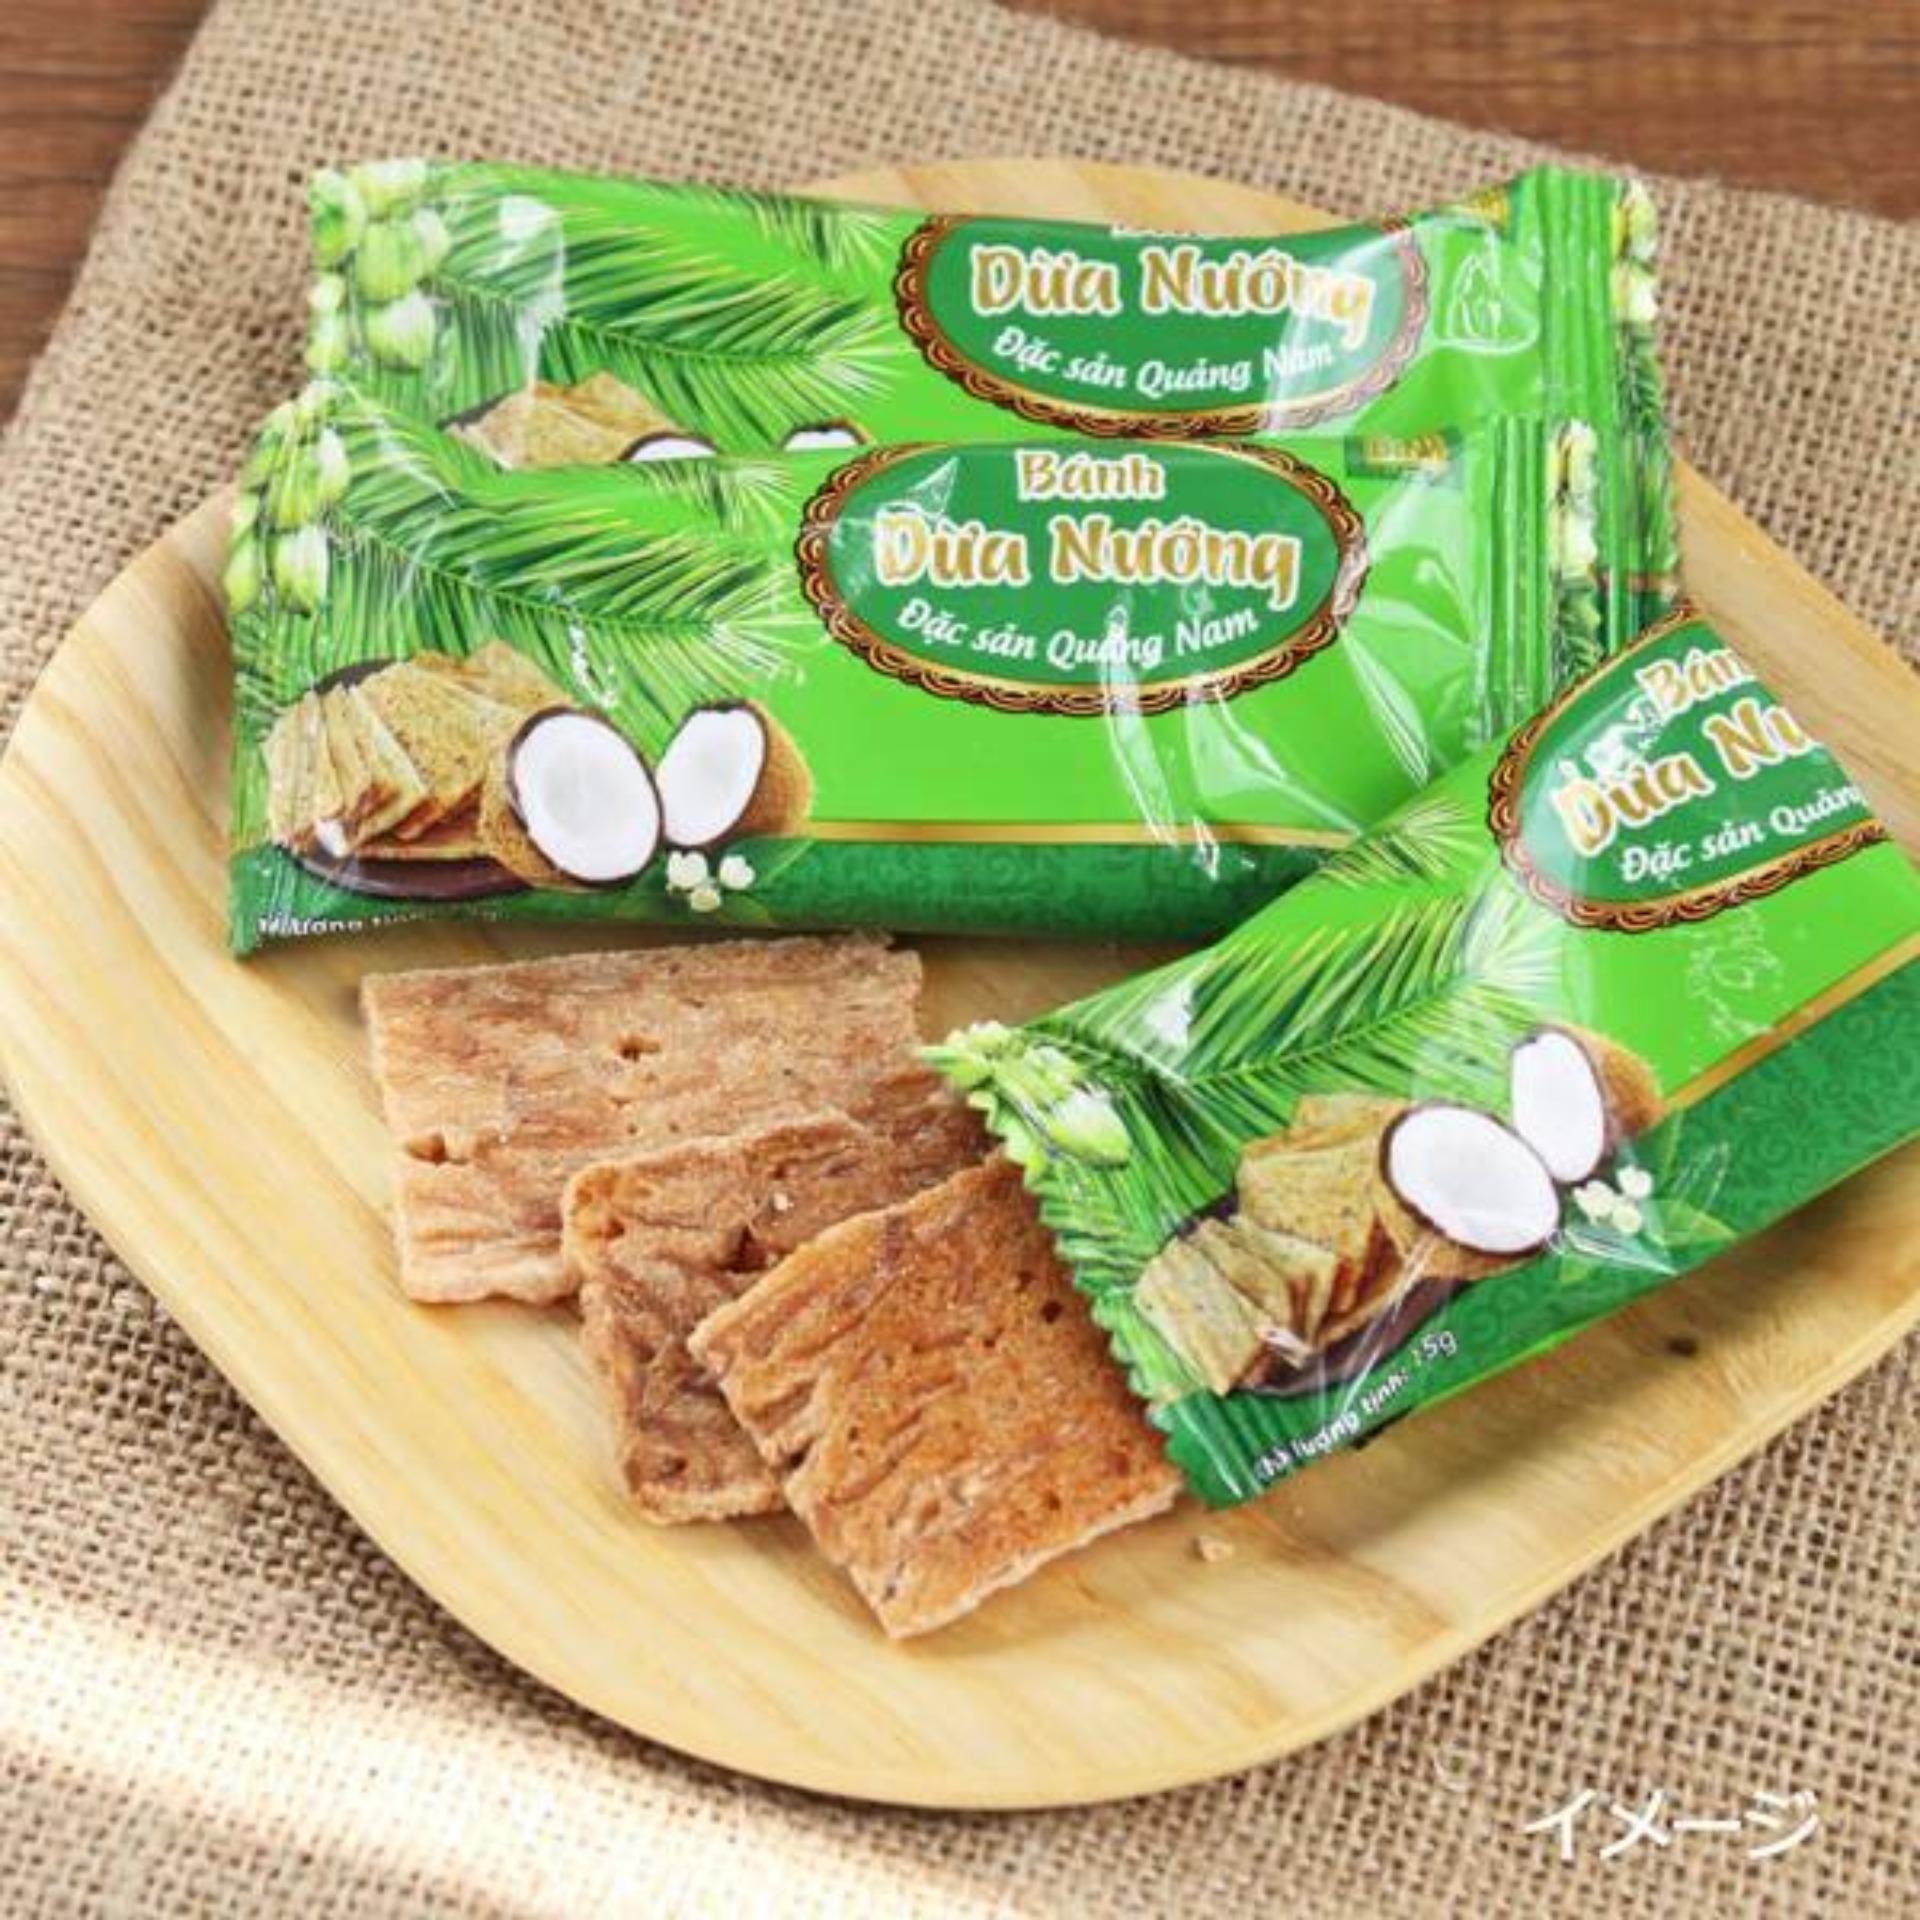 10 Bịch Bánh Dừa Nướng 2000g -Đặc Sản Quảng Nam( Chỉ 24.000 /1 bịch)